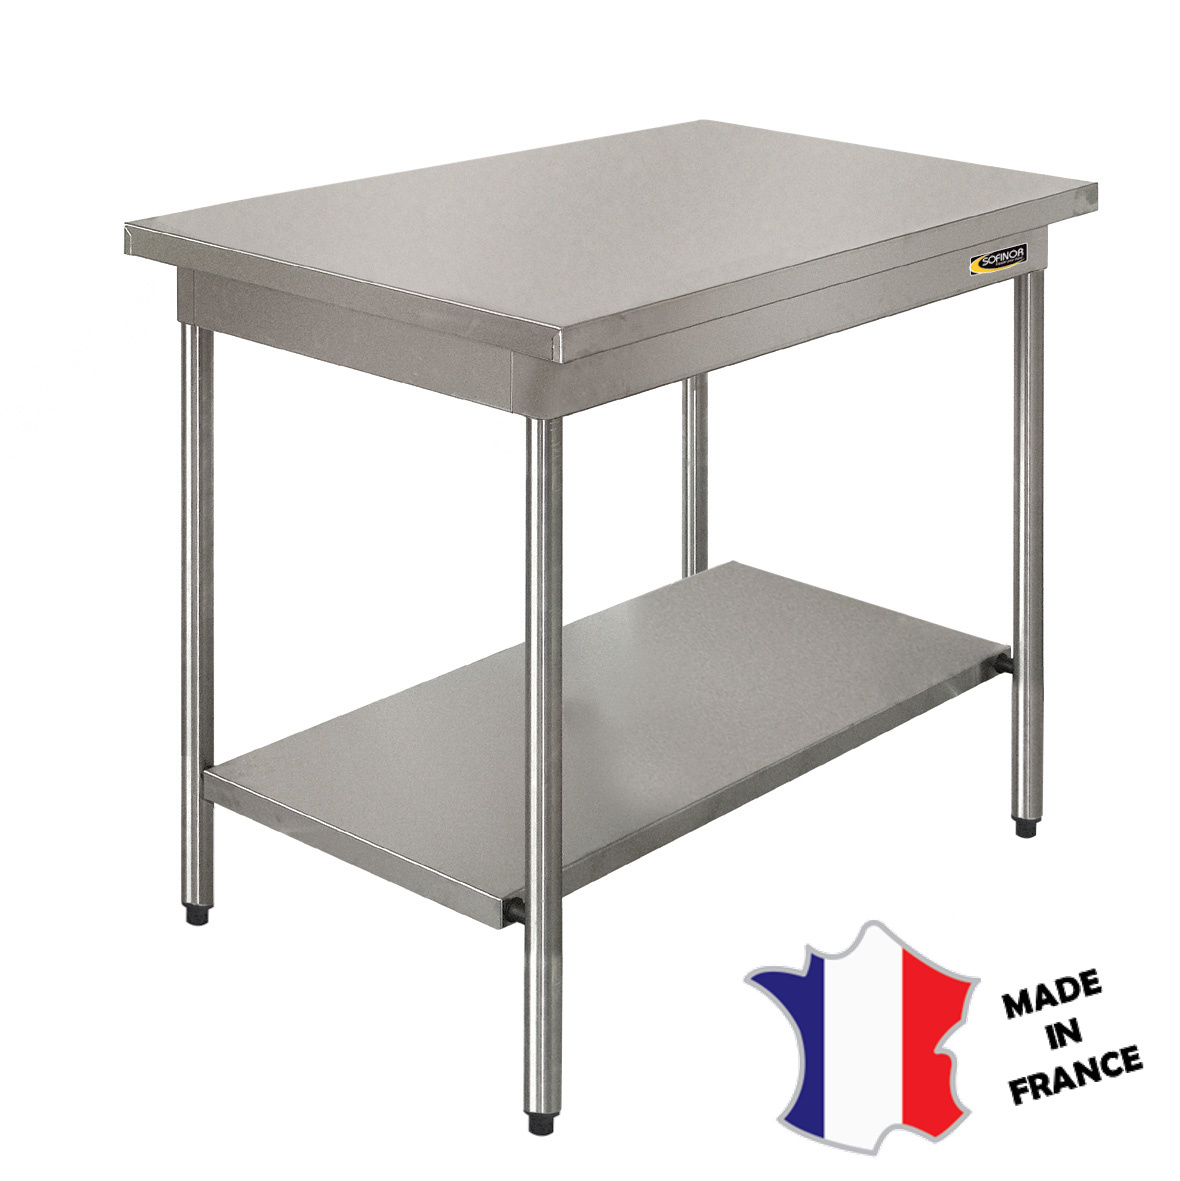 Table démontable rayonnee | Inox | centrale | étagère basse | pieds ronds | 700(l)x700x900mm | sur vérins inox